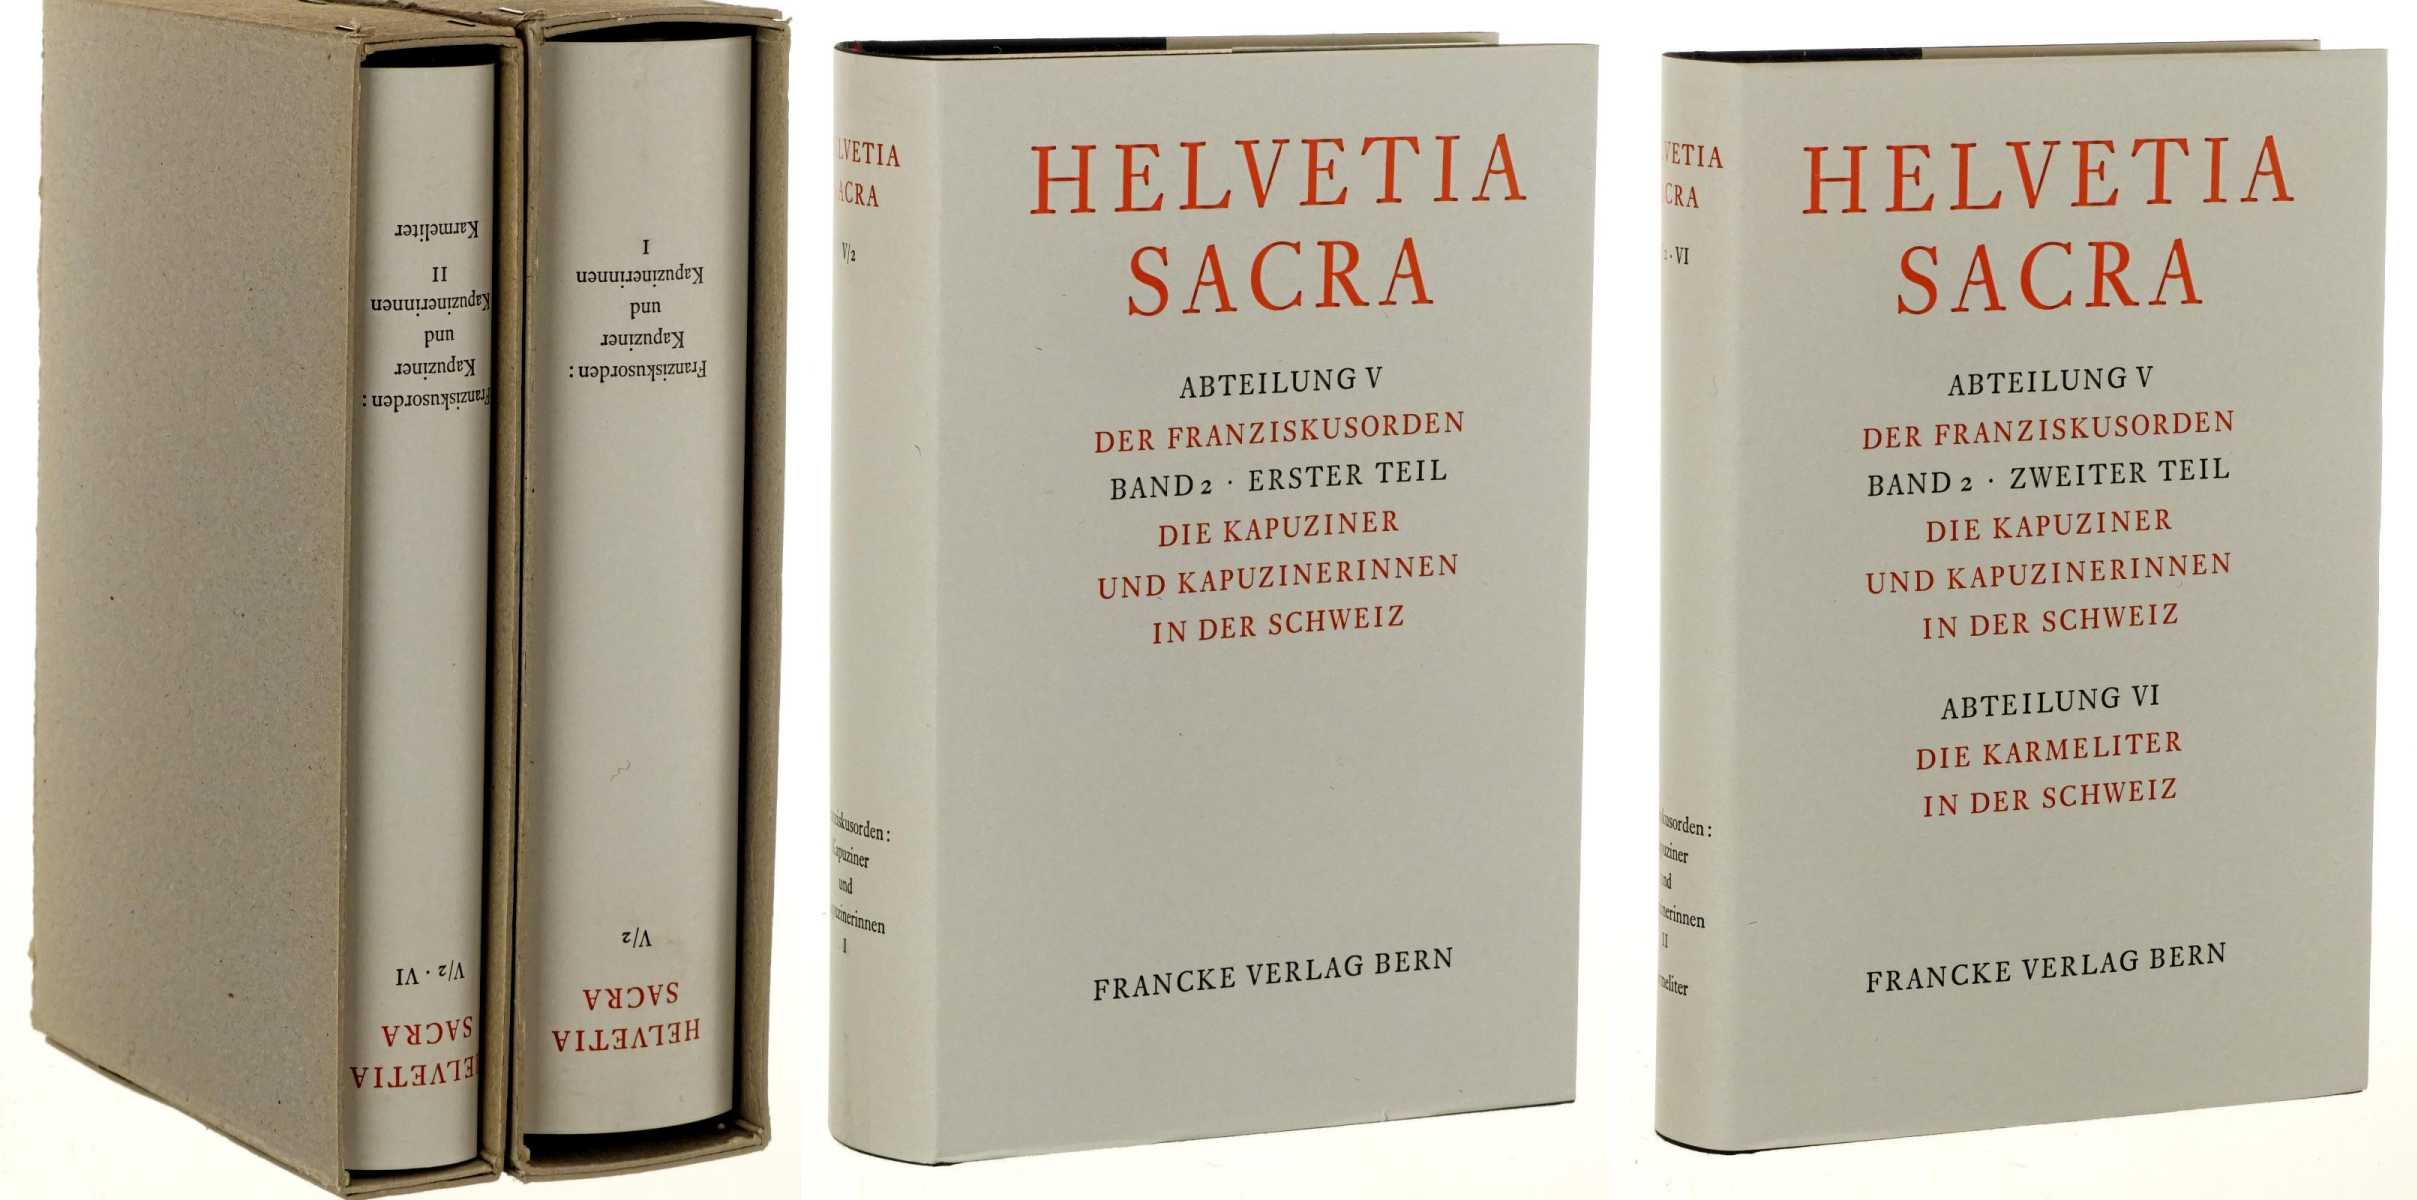   Helvetia sacra. Hrsg. von Albert Bruckner. Abt. 5: Der Franziskusorden Bd. 2, Teil 1/ Teil 2: Die Kapuziner und Kapuzinerinnen in der Schweiz/ Abt. 6: Die Karmeliter in der Schweiz. (in 2 Teilbänden). 